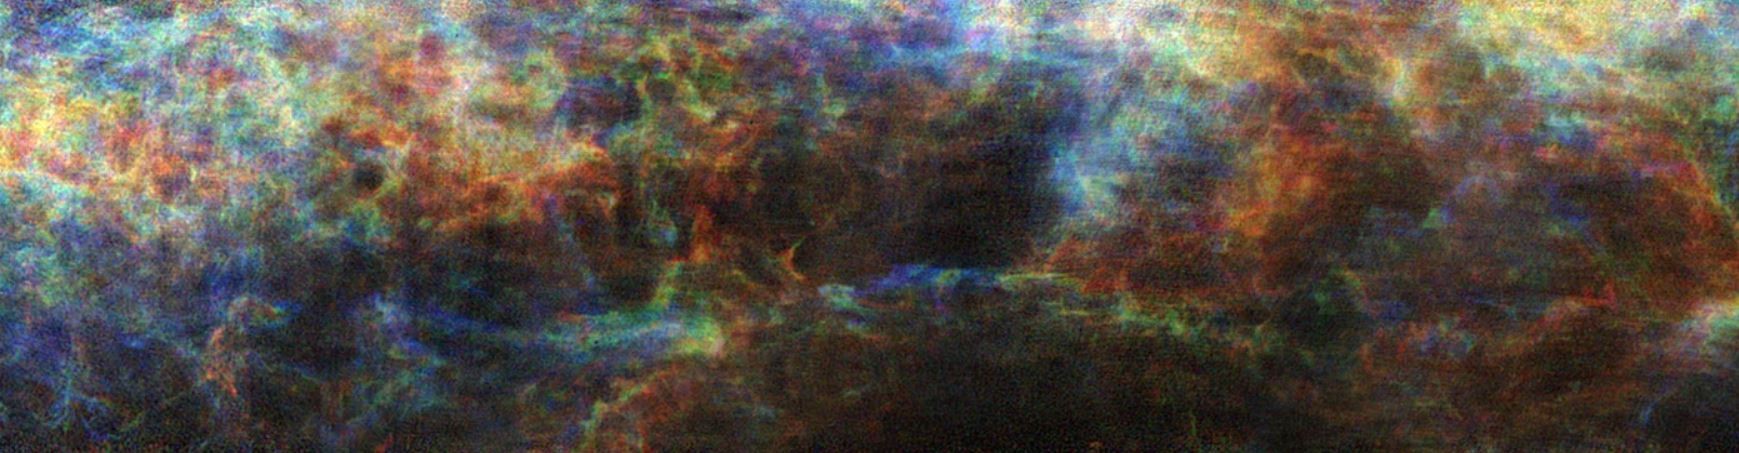  Visão geral da Via Láctea que inclui filamento Maggie na área inferior (Foto: T. Müller / J. Syed / MPIA)